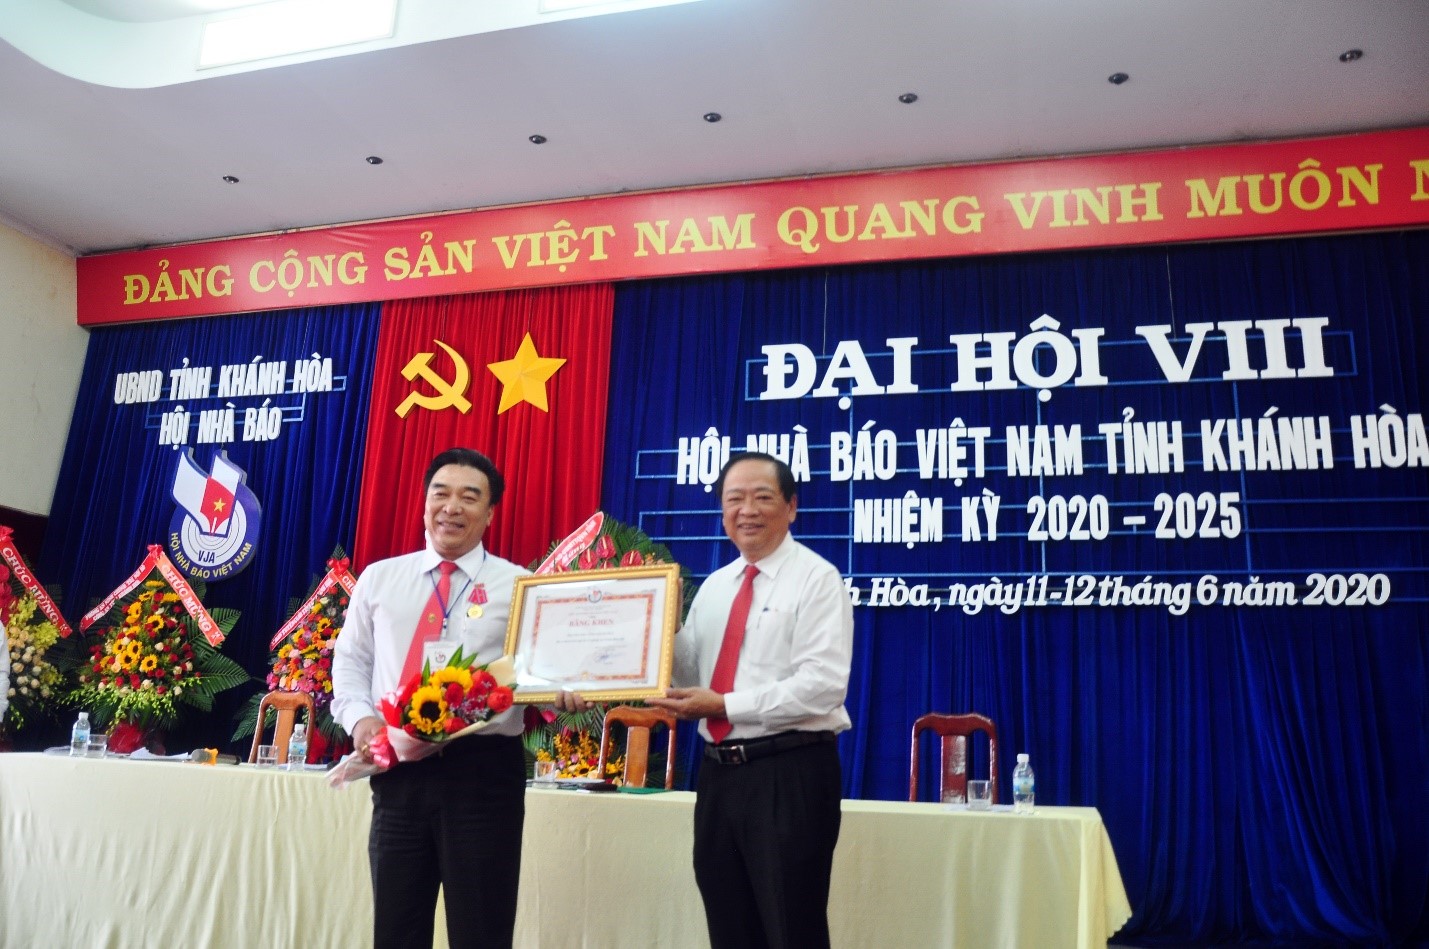 Ông Mai Tiến Lộc, đại diện lãnh đạo Hội Nhà Báo Việt Nam, phát biểu chào mừng và tặng Bằng Khen Hội Nhà Báo Việt Nam cho Hội Nhà Báo Khánh Hòa